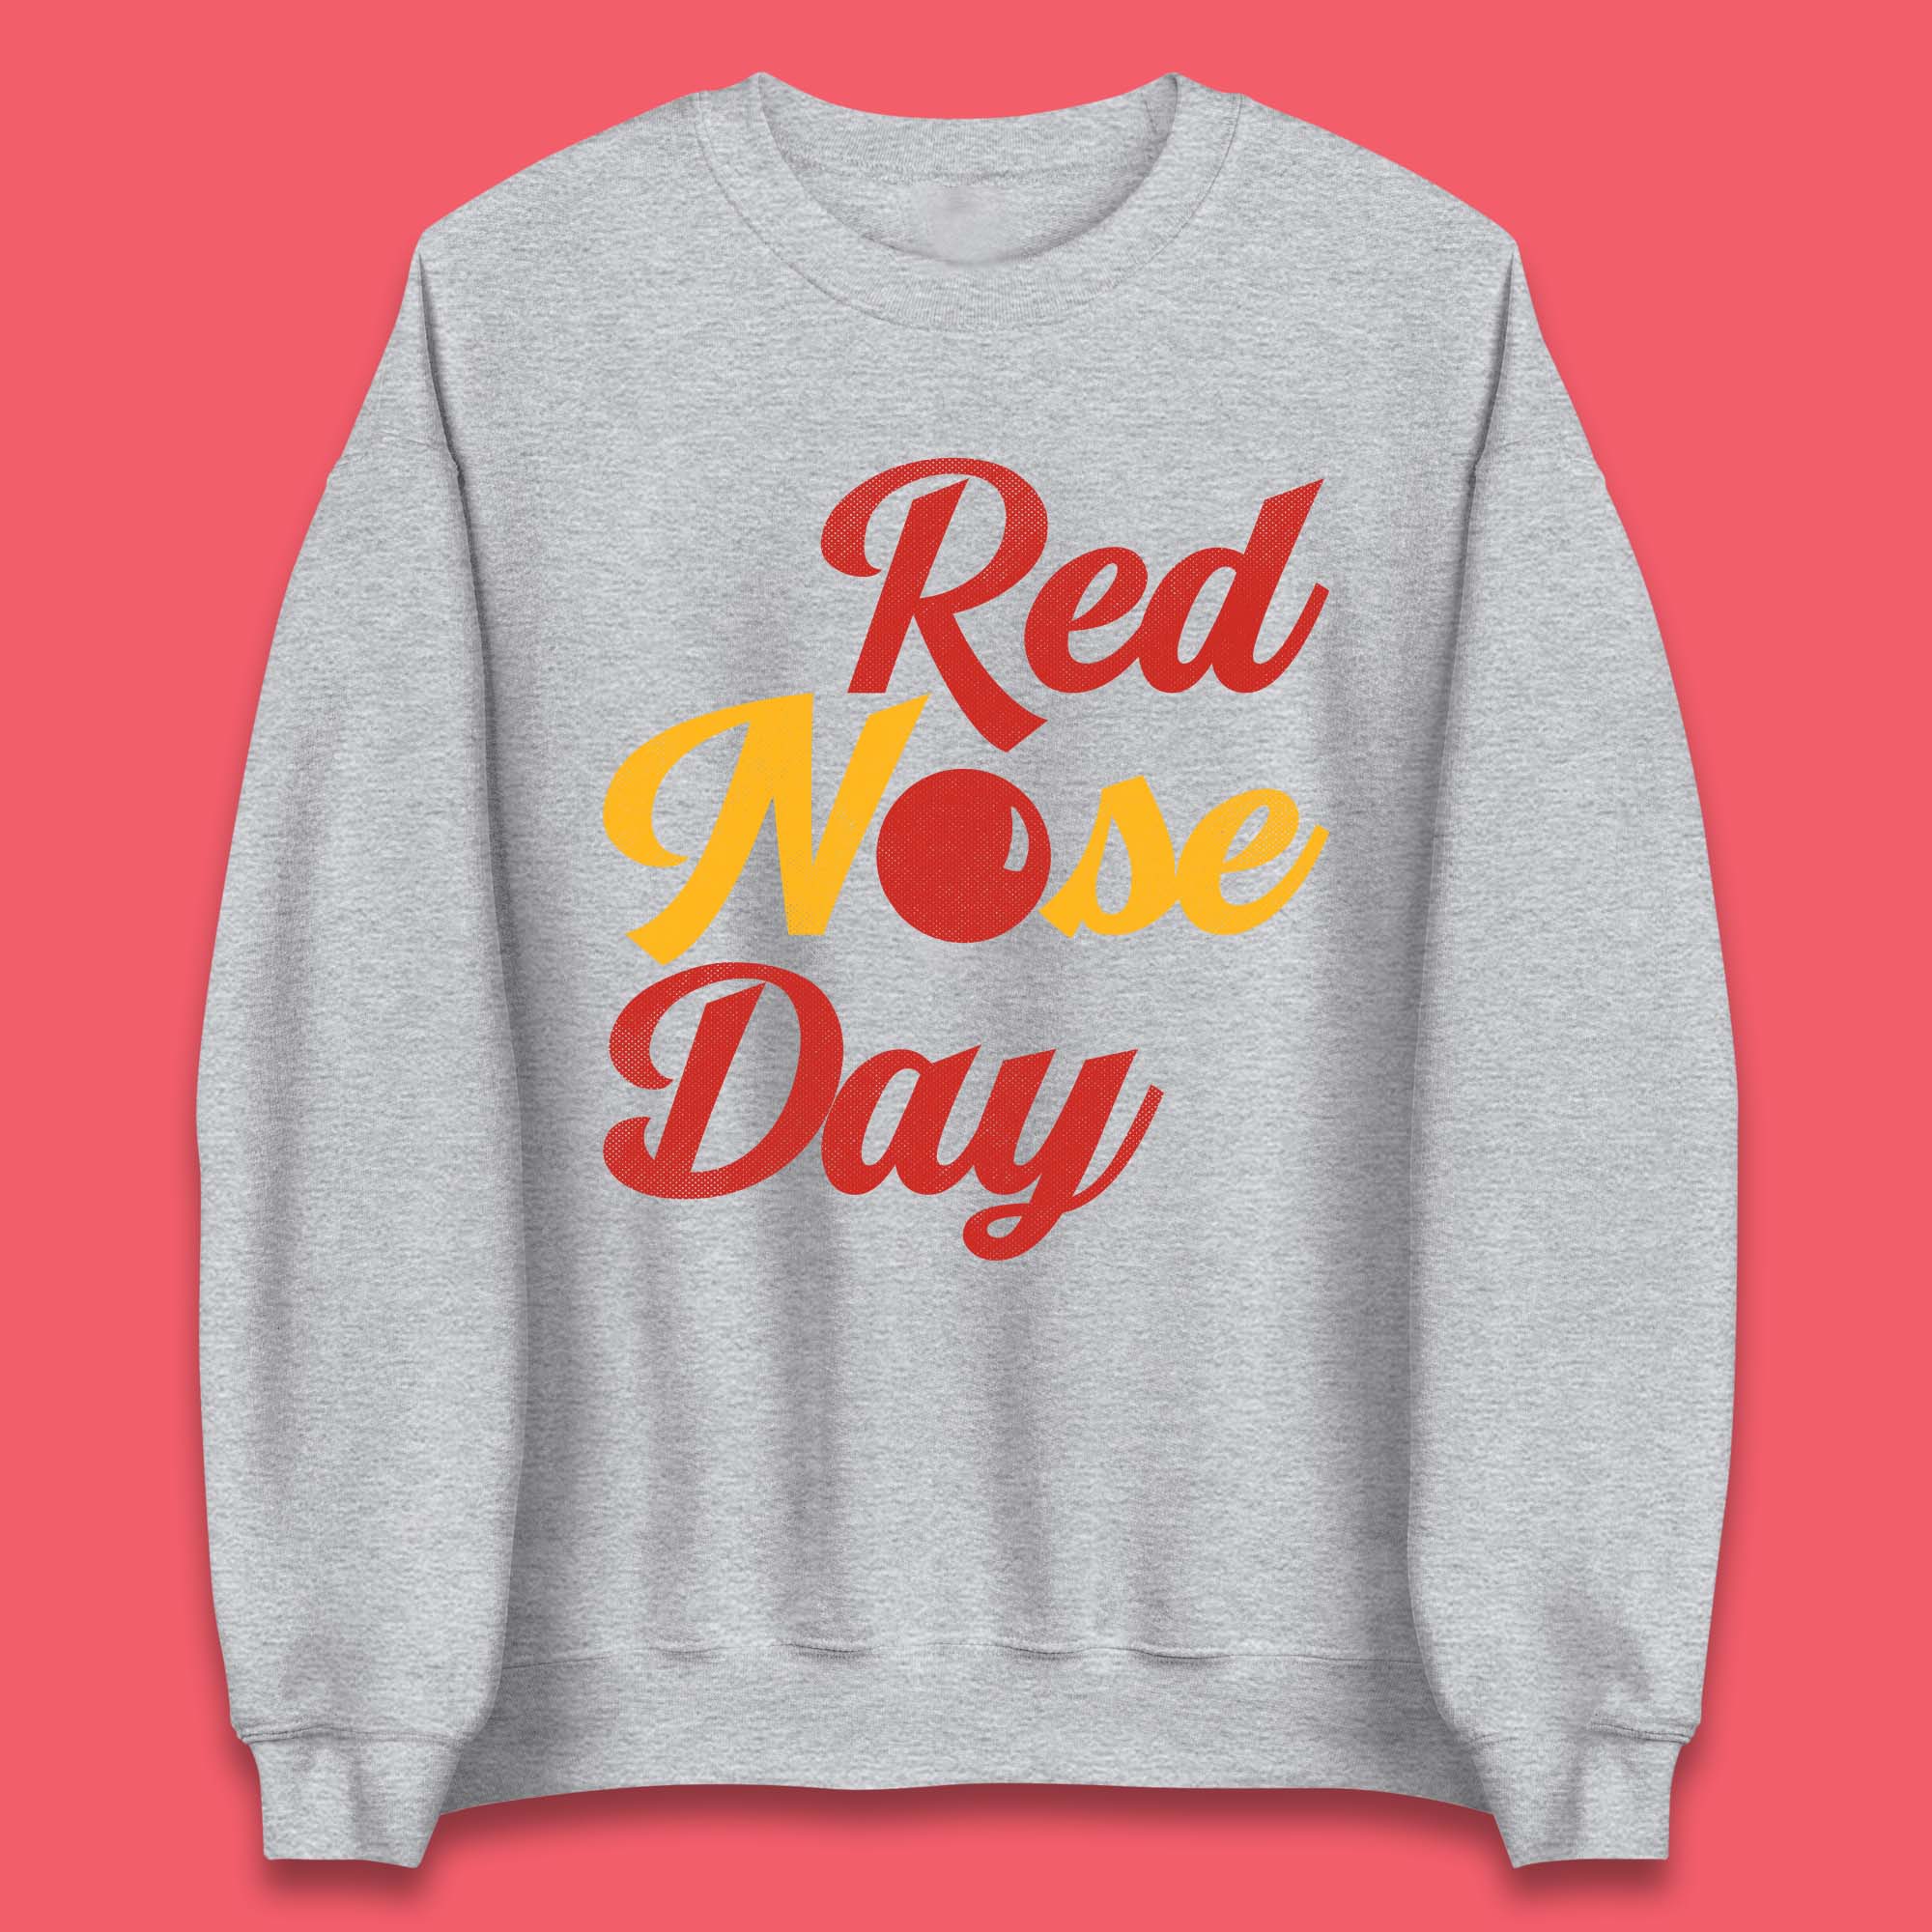 Red Nose Day Unisex Sweatshirt